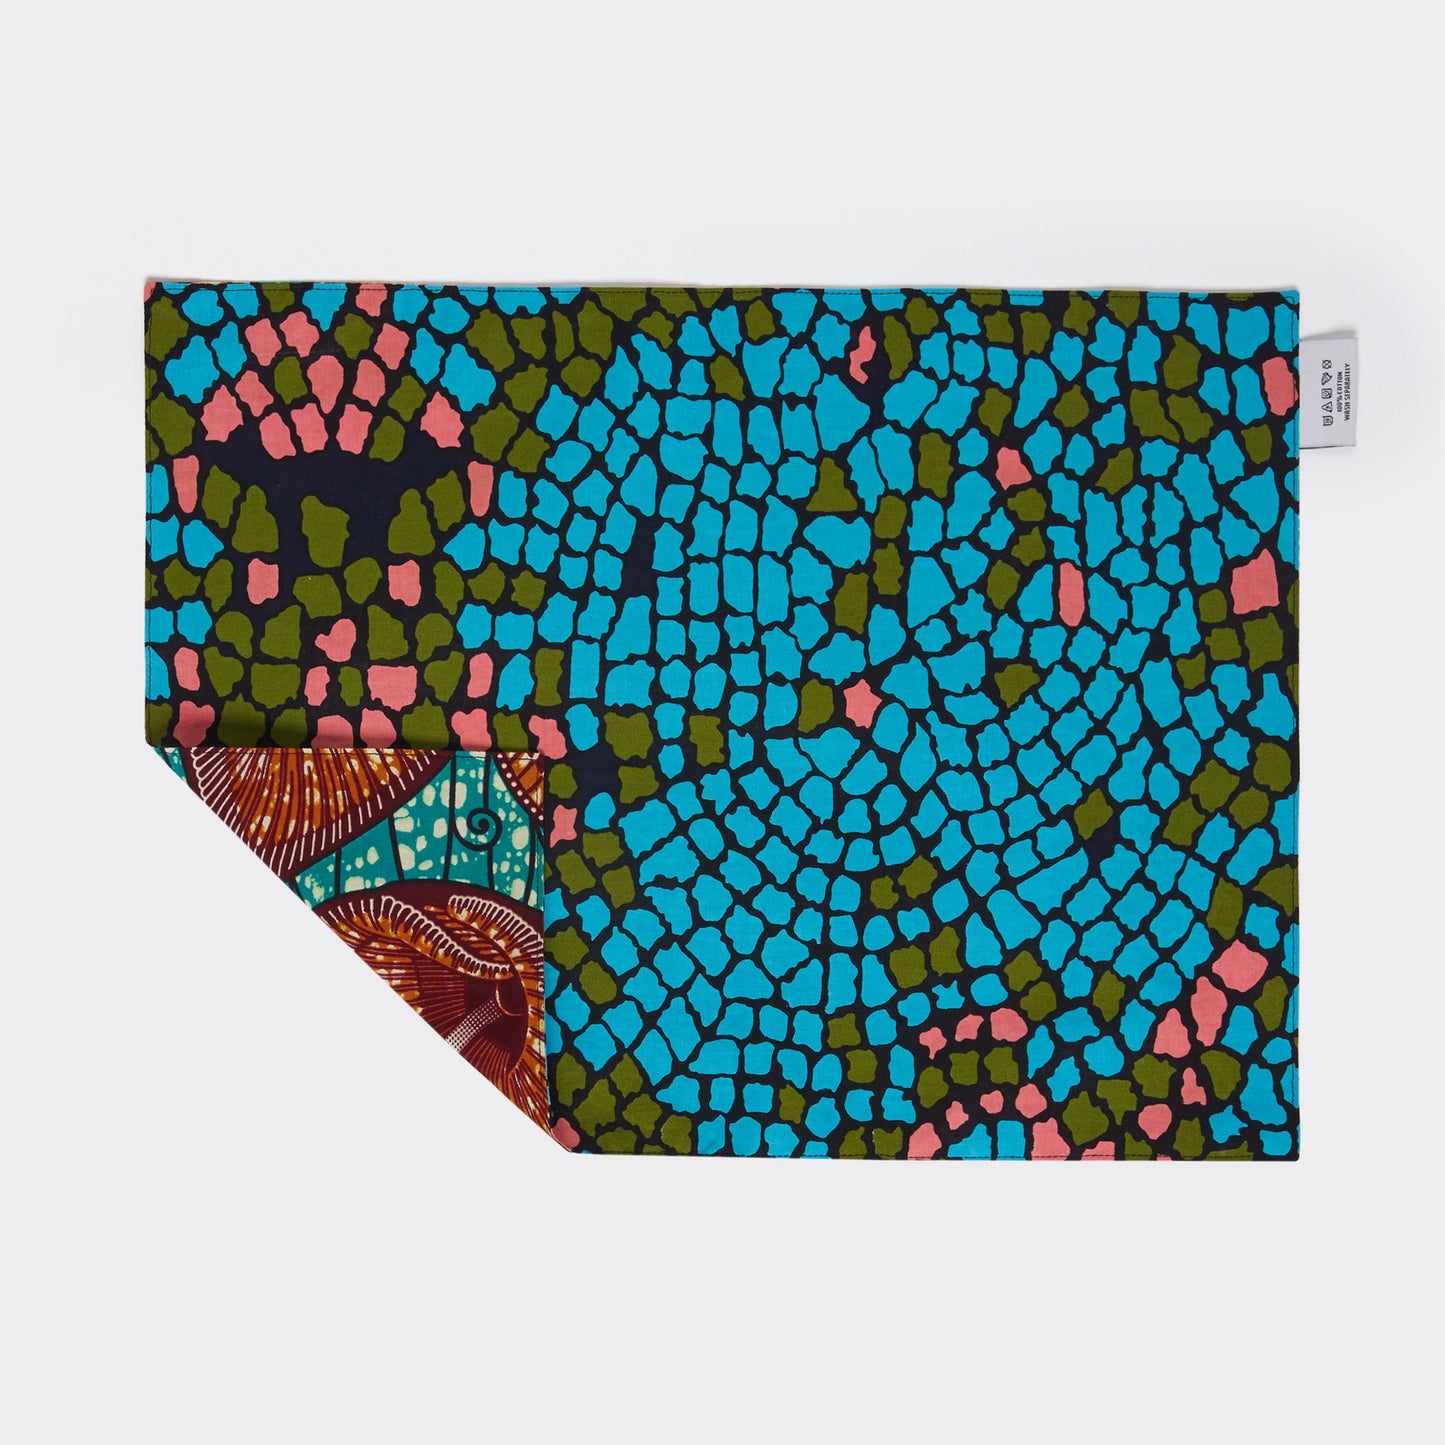 Σουπλά διπλής όψης (candy mosaic)